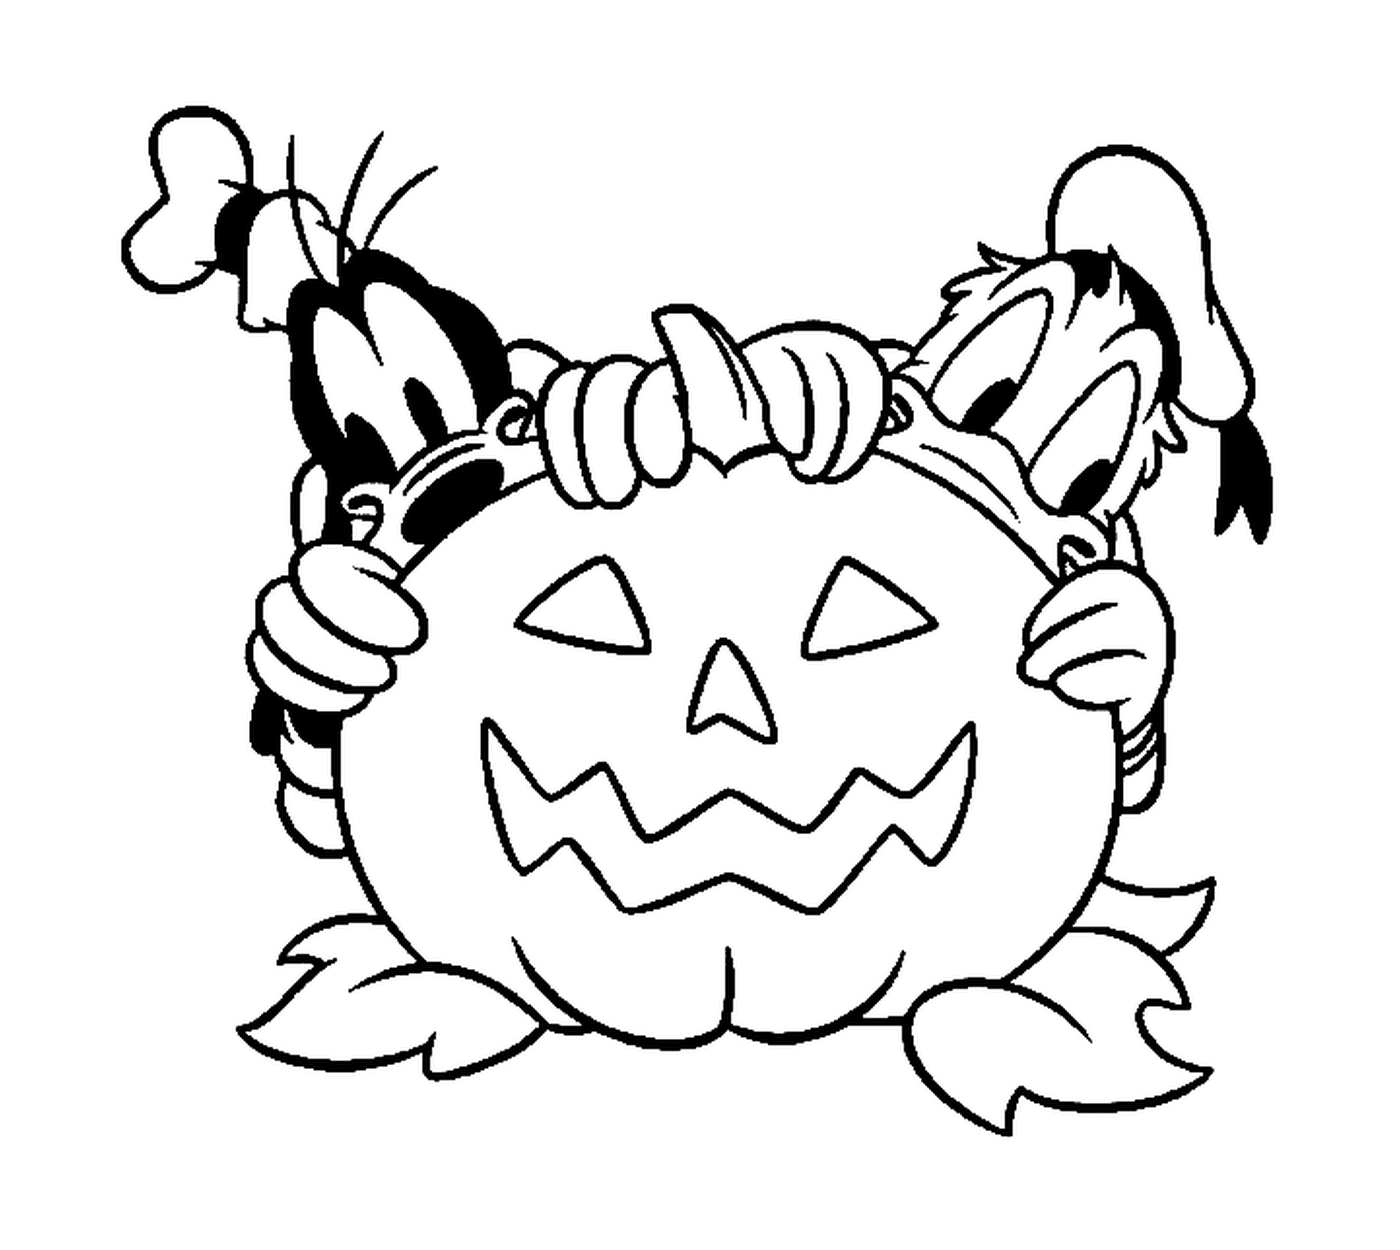 Donald et Dingo se cachent derriere une citrouille d Halloween